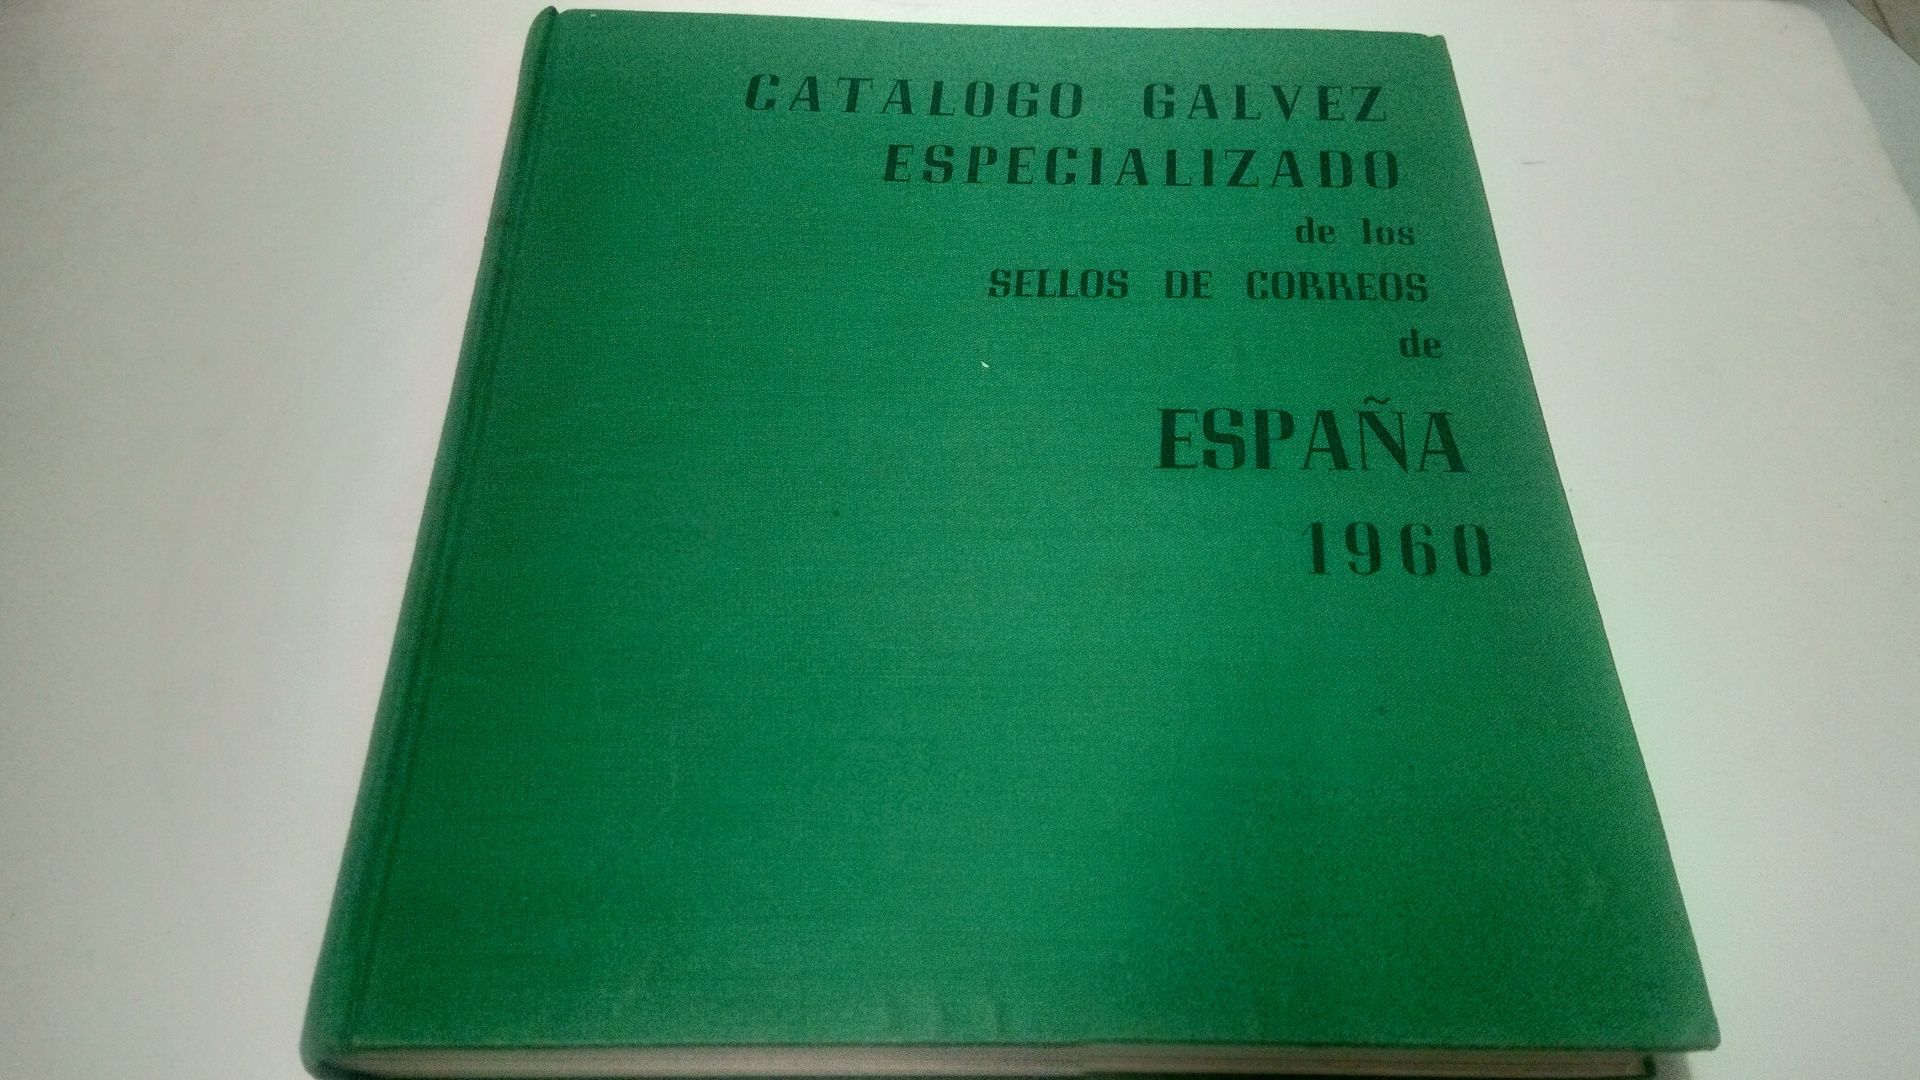 Filatelia: Catálogo Galvez especializado - selos Espanha (1960)